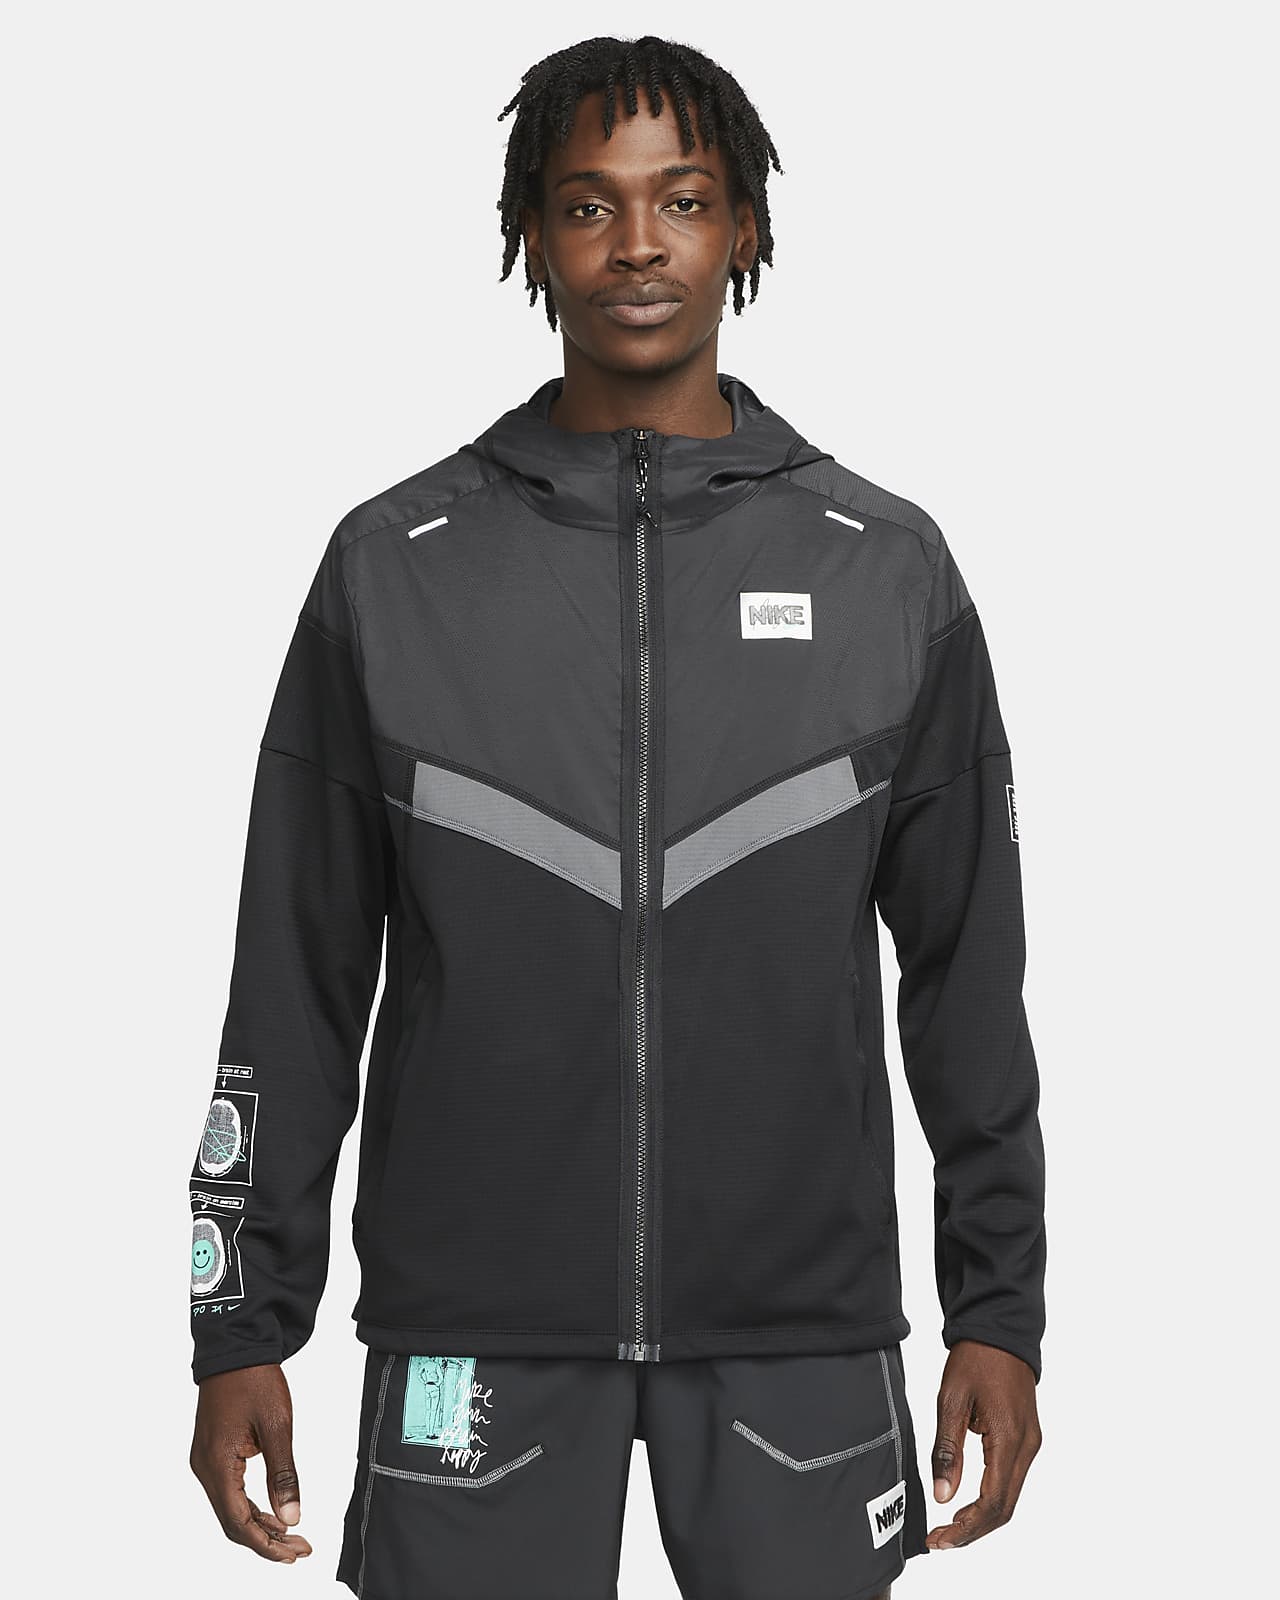 Nike Windrunner D.Y.E. Men's Running Jacket